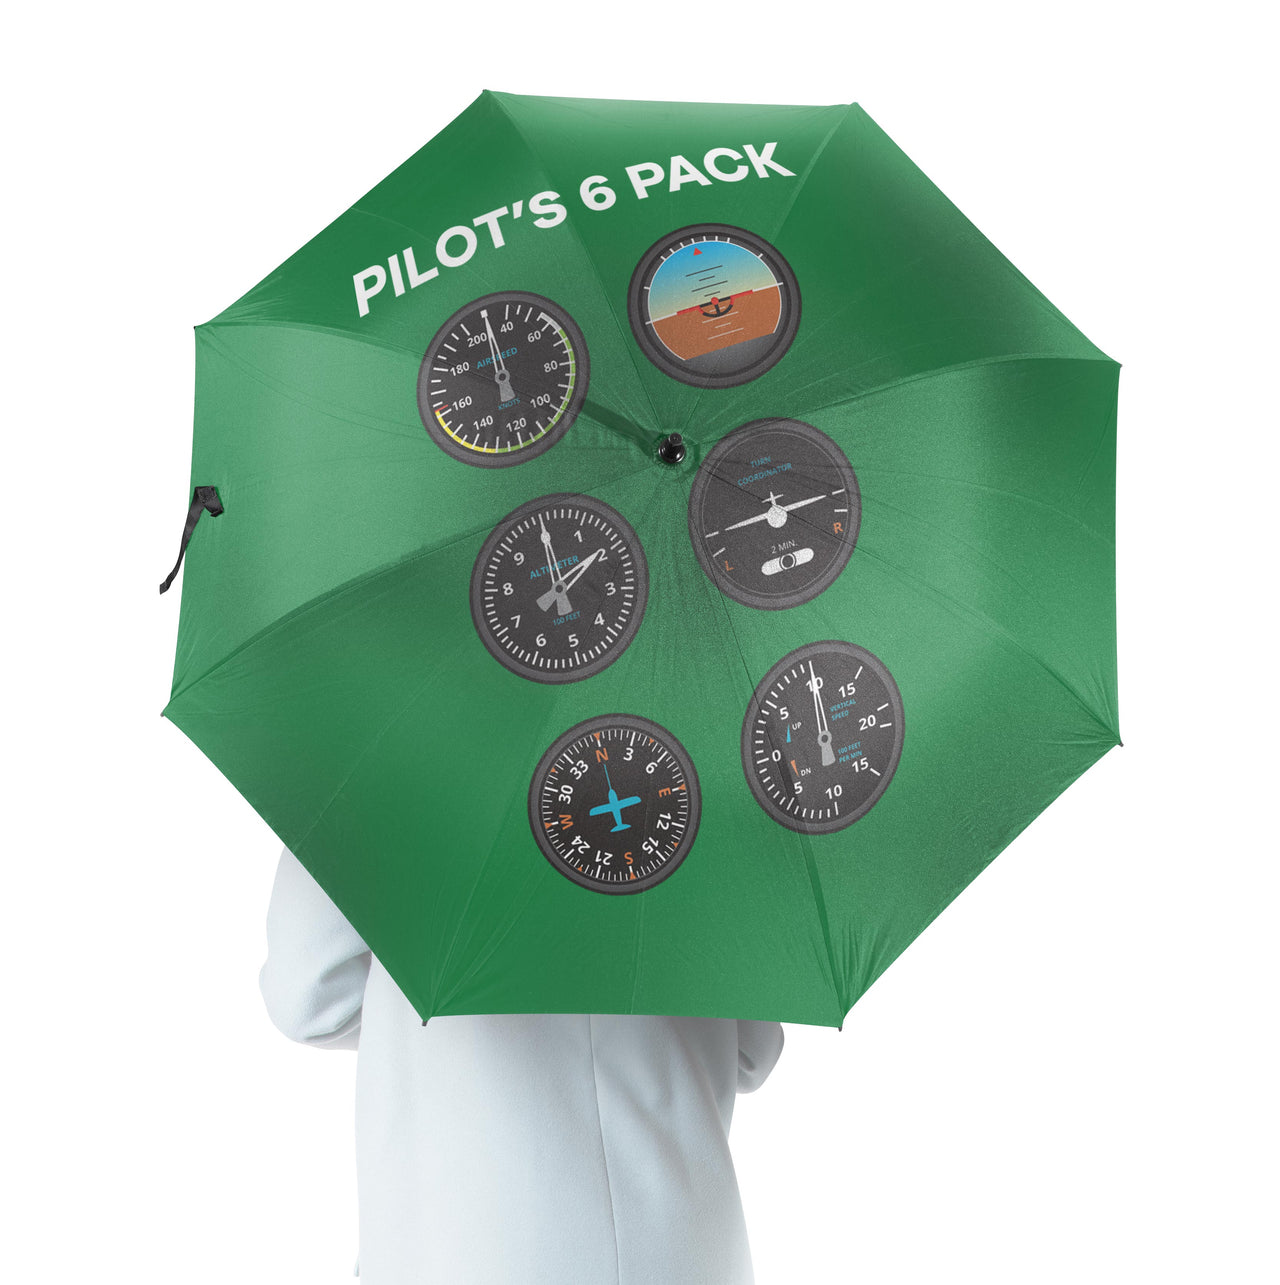 Pilot's 6 Pack Designed Umbrella